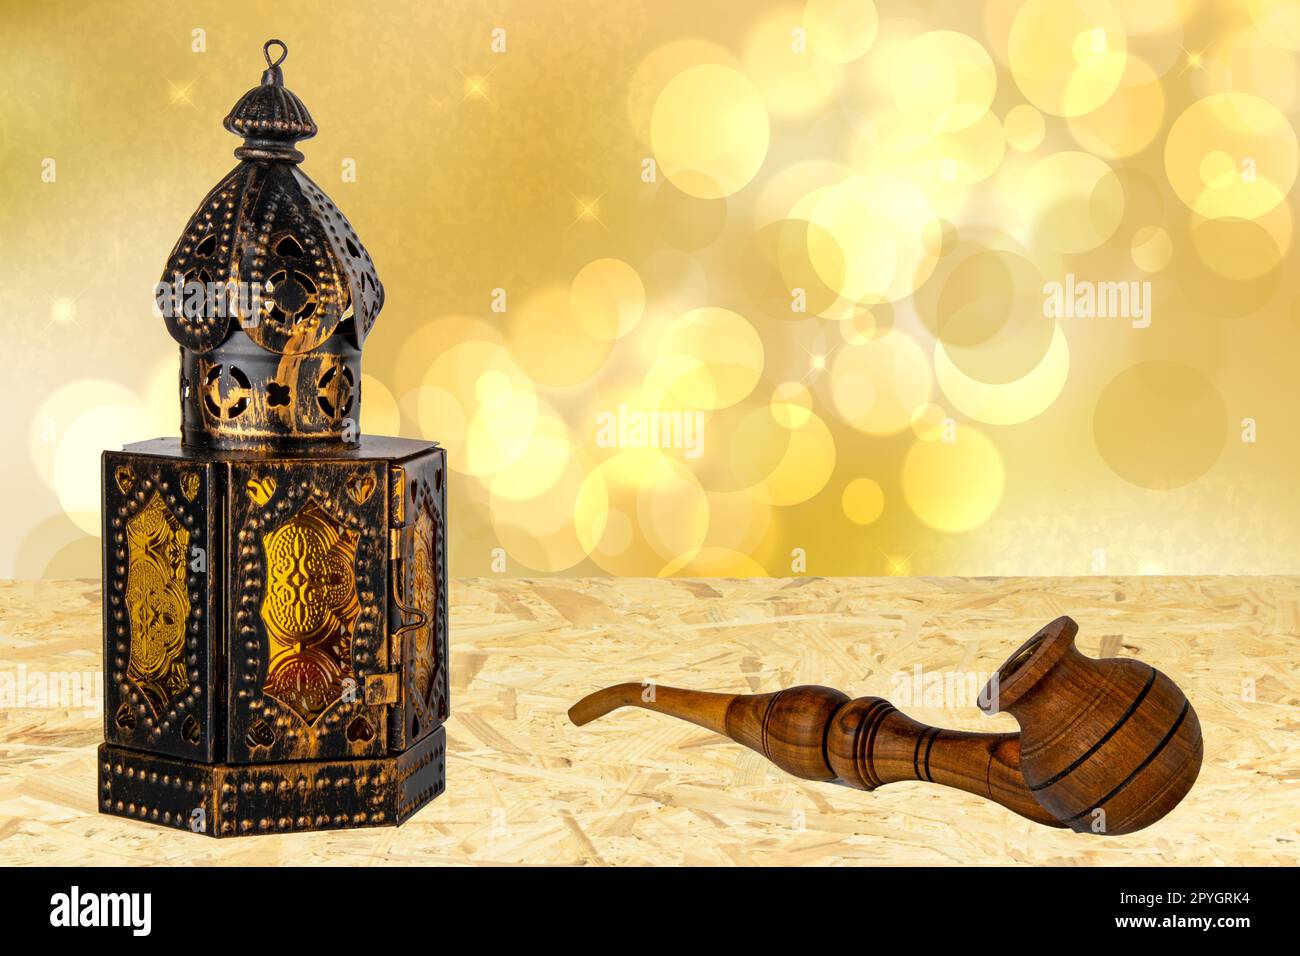 Vieille lanterne métallique orientale ou arabe et une pipe à tabac en bois à la main sur la table sur fond abstrait d'étoiles dorées. Modèle Ramadan Kareem. Conception de carte. Banque D'Images